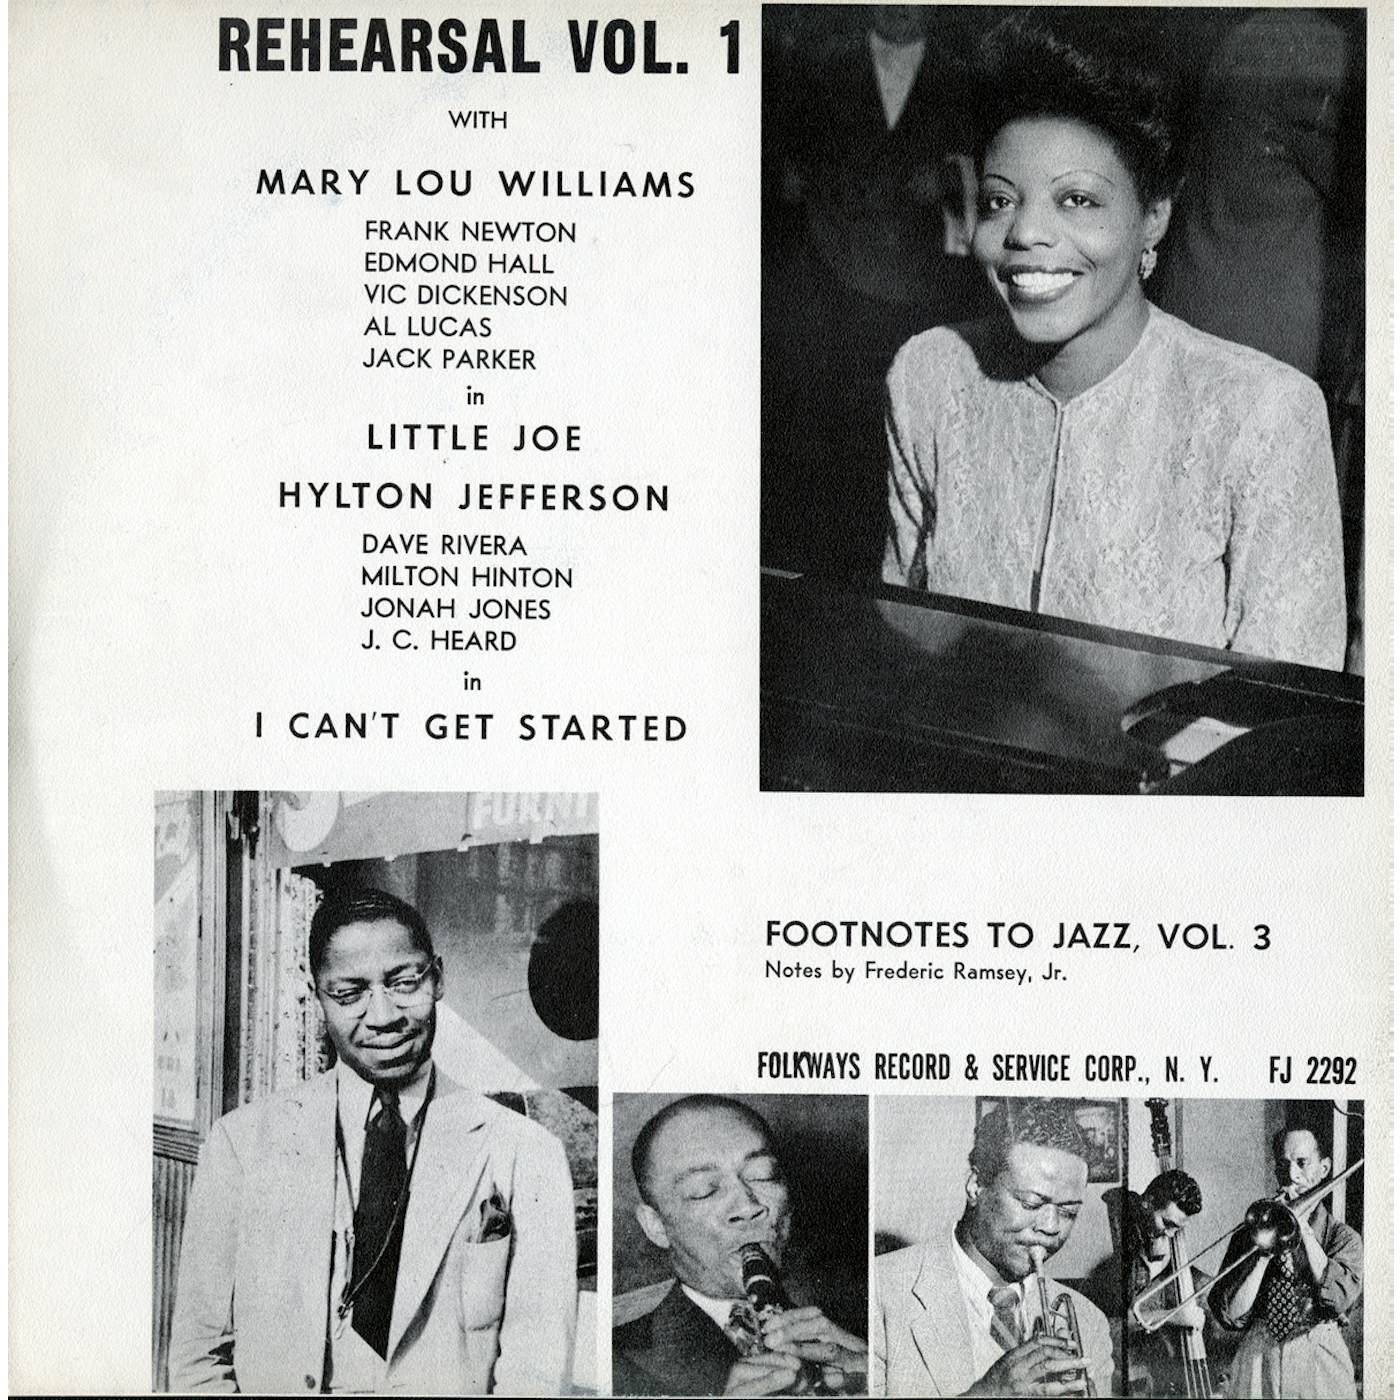 Mary Lou Williams FOOTNOTES TO JAZZ VOL. 3: JAZZ REHEARSAL I CD